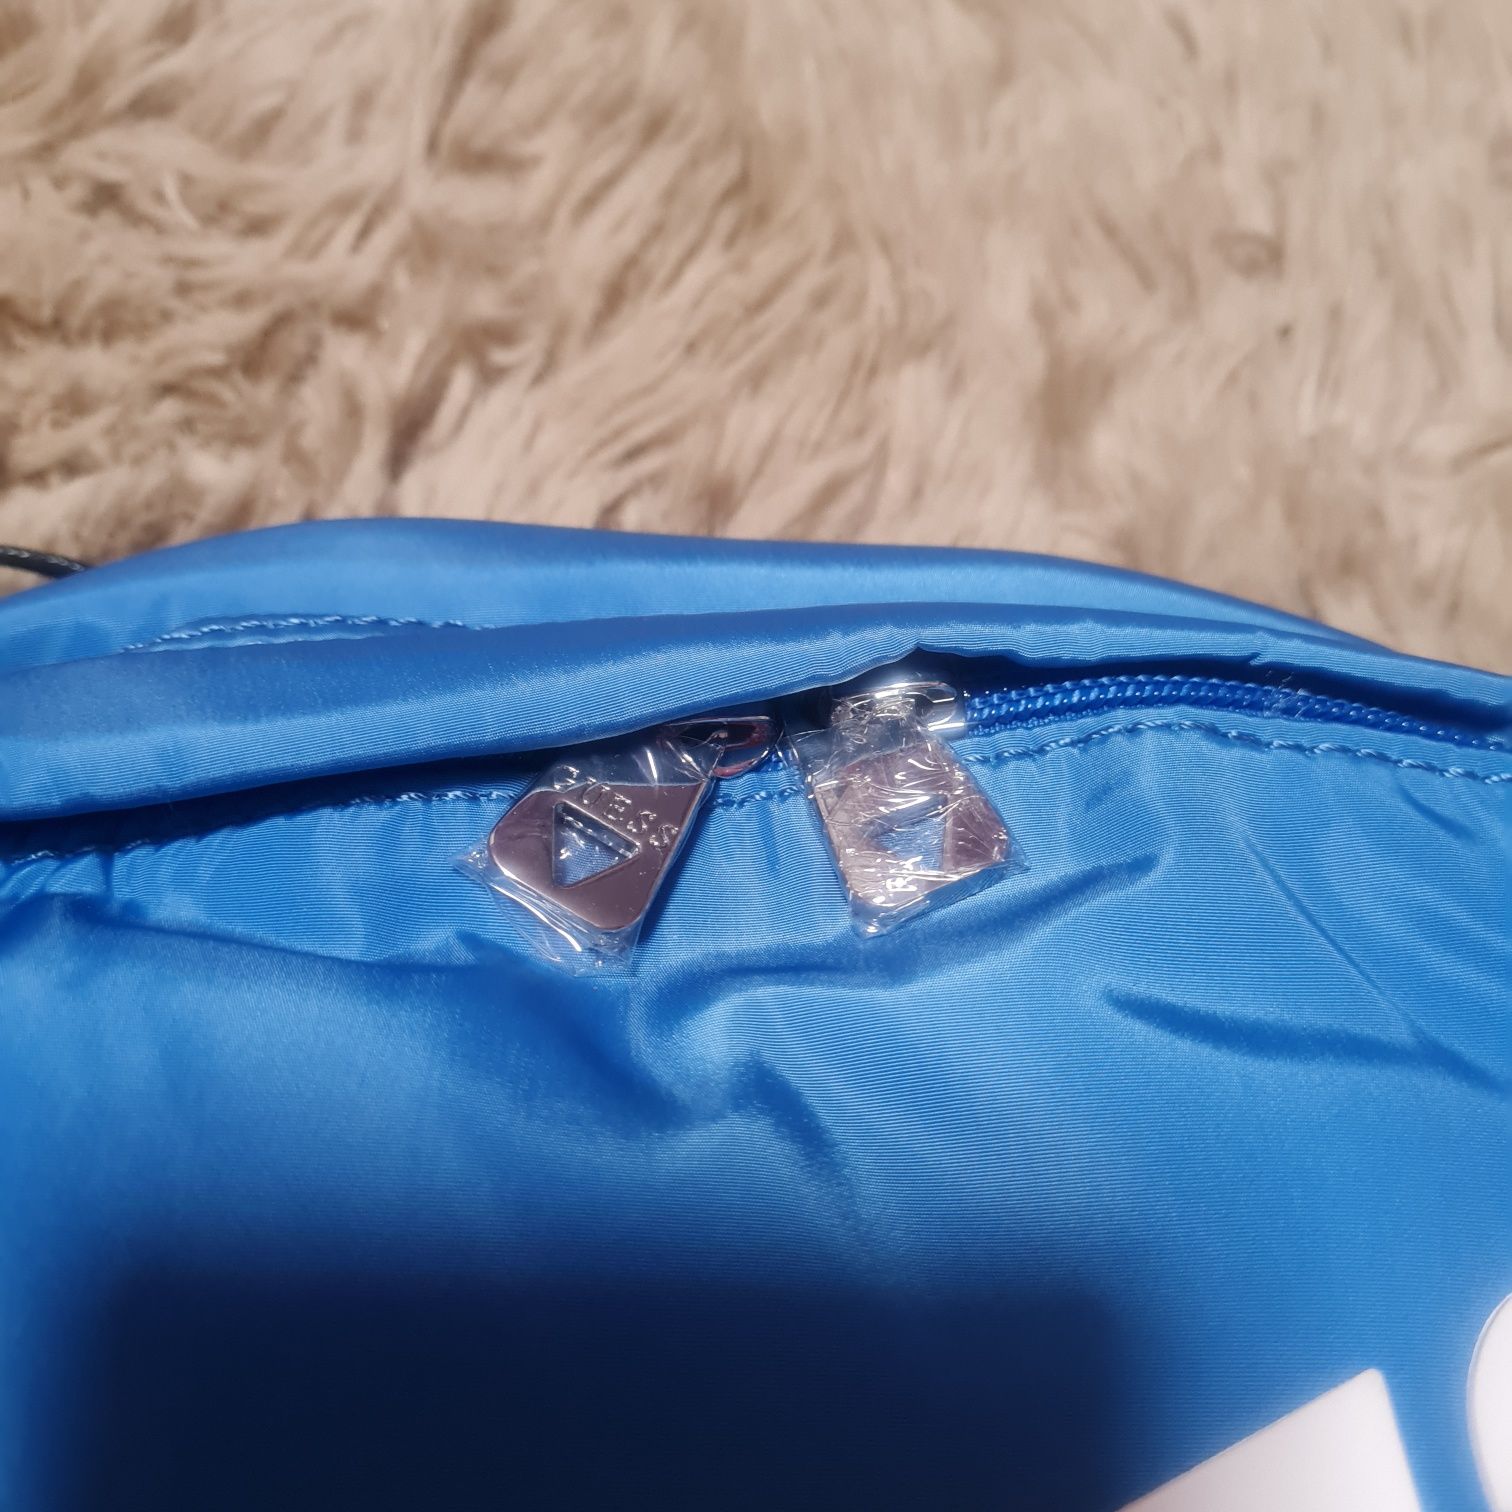 Guess plecak niebieski duży nowy z metką kupiony na zalando backpack